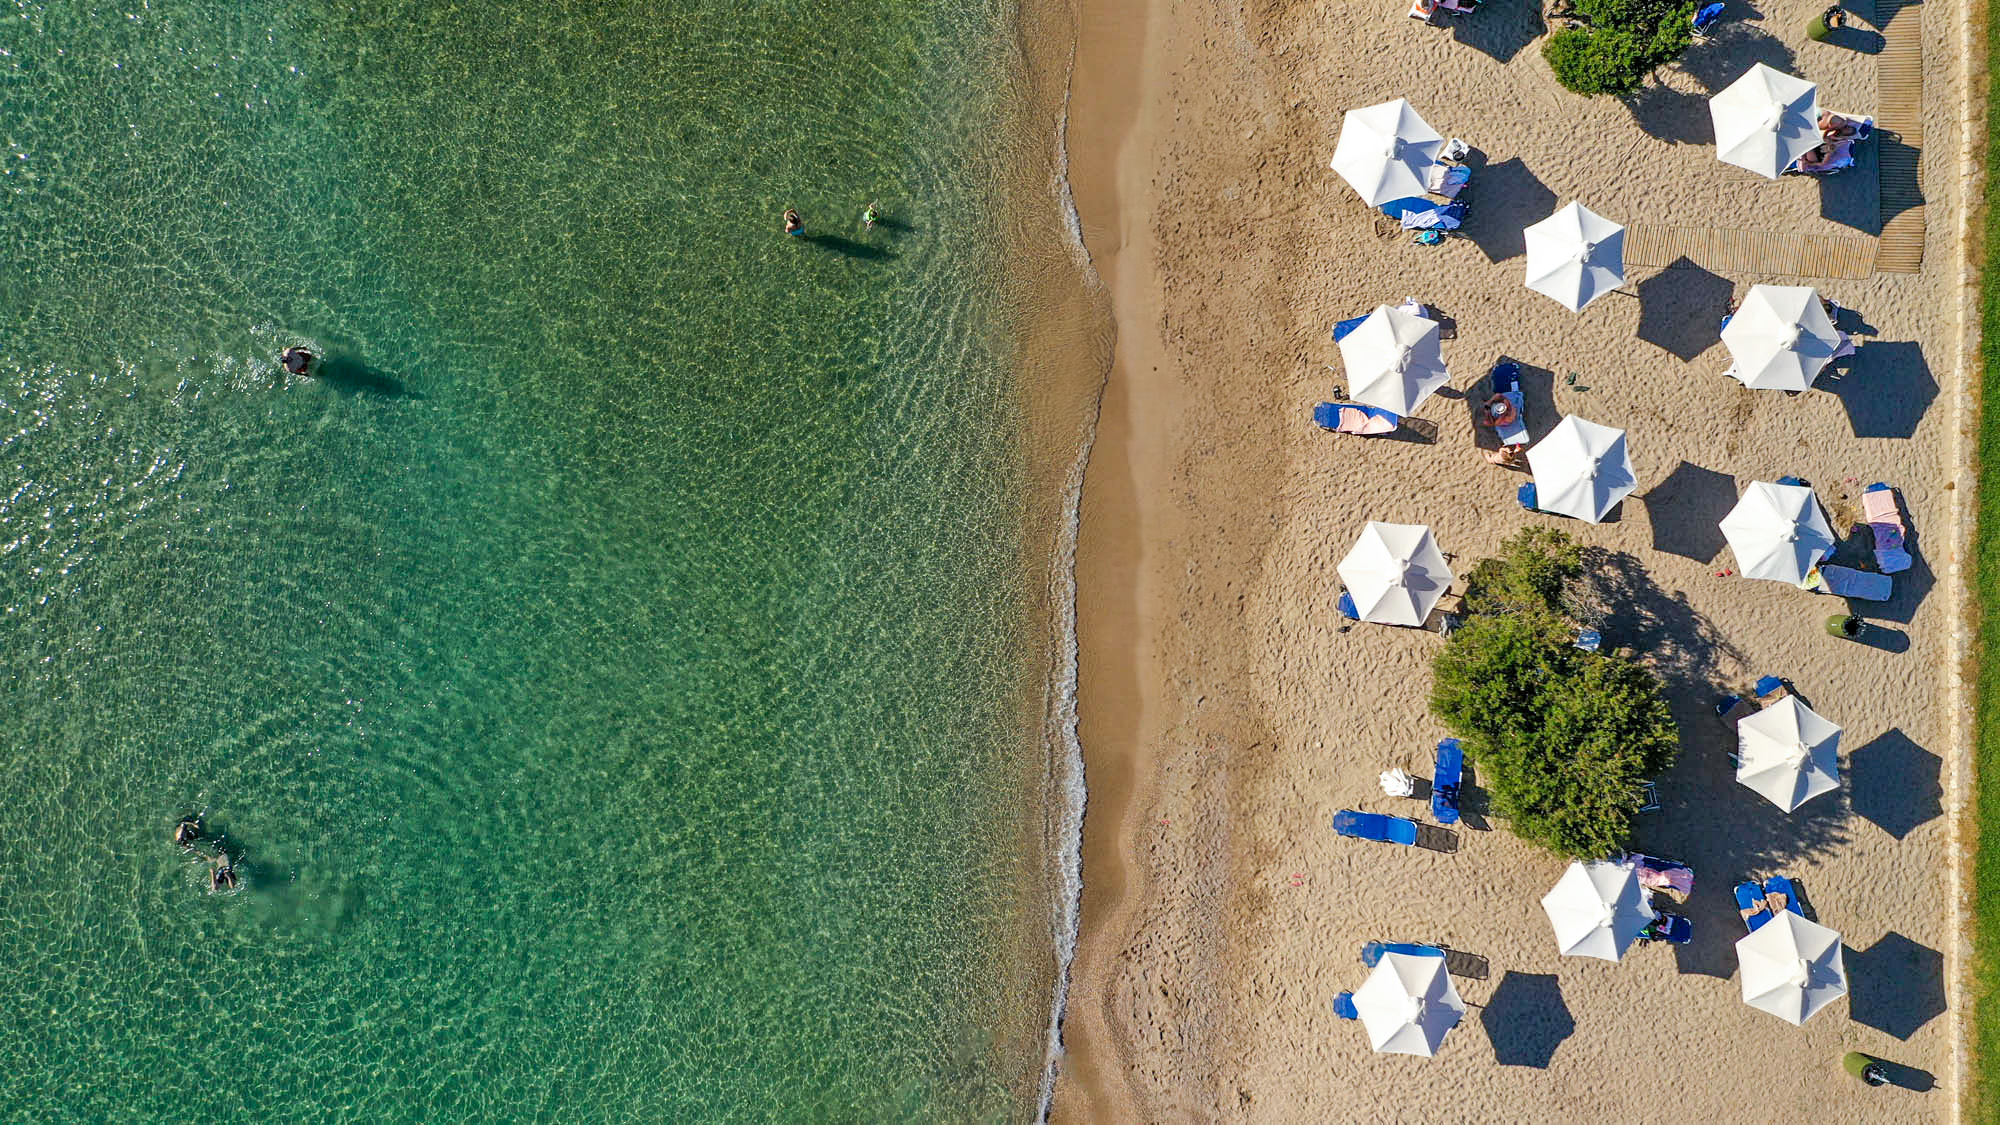 plaże, plaża w kalamacie widziana z góry, ludzie i parasolki o przejrzysta woda